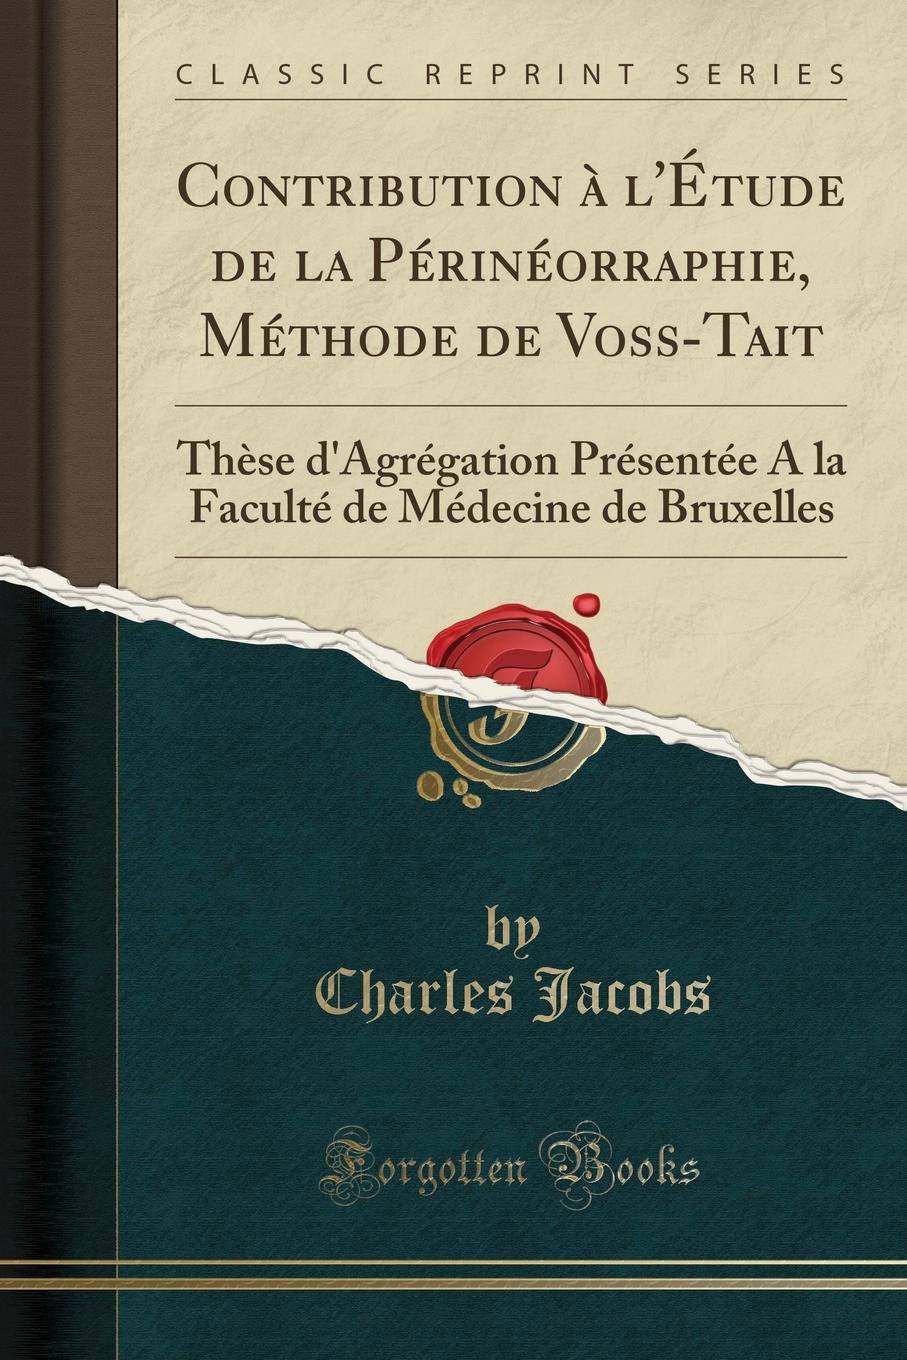 Contribution a l.Etude de la Perineorraphie, Methode de Voss-Tait. These d.Agregation Presentee A la Faculte de Medecine de Bruxelles (Classic Reprint)